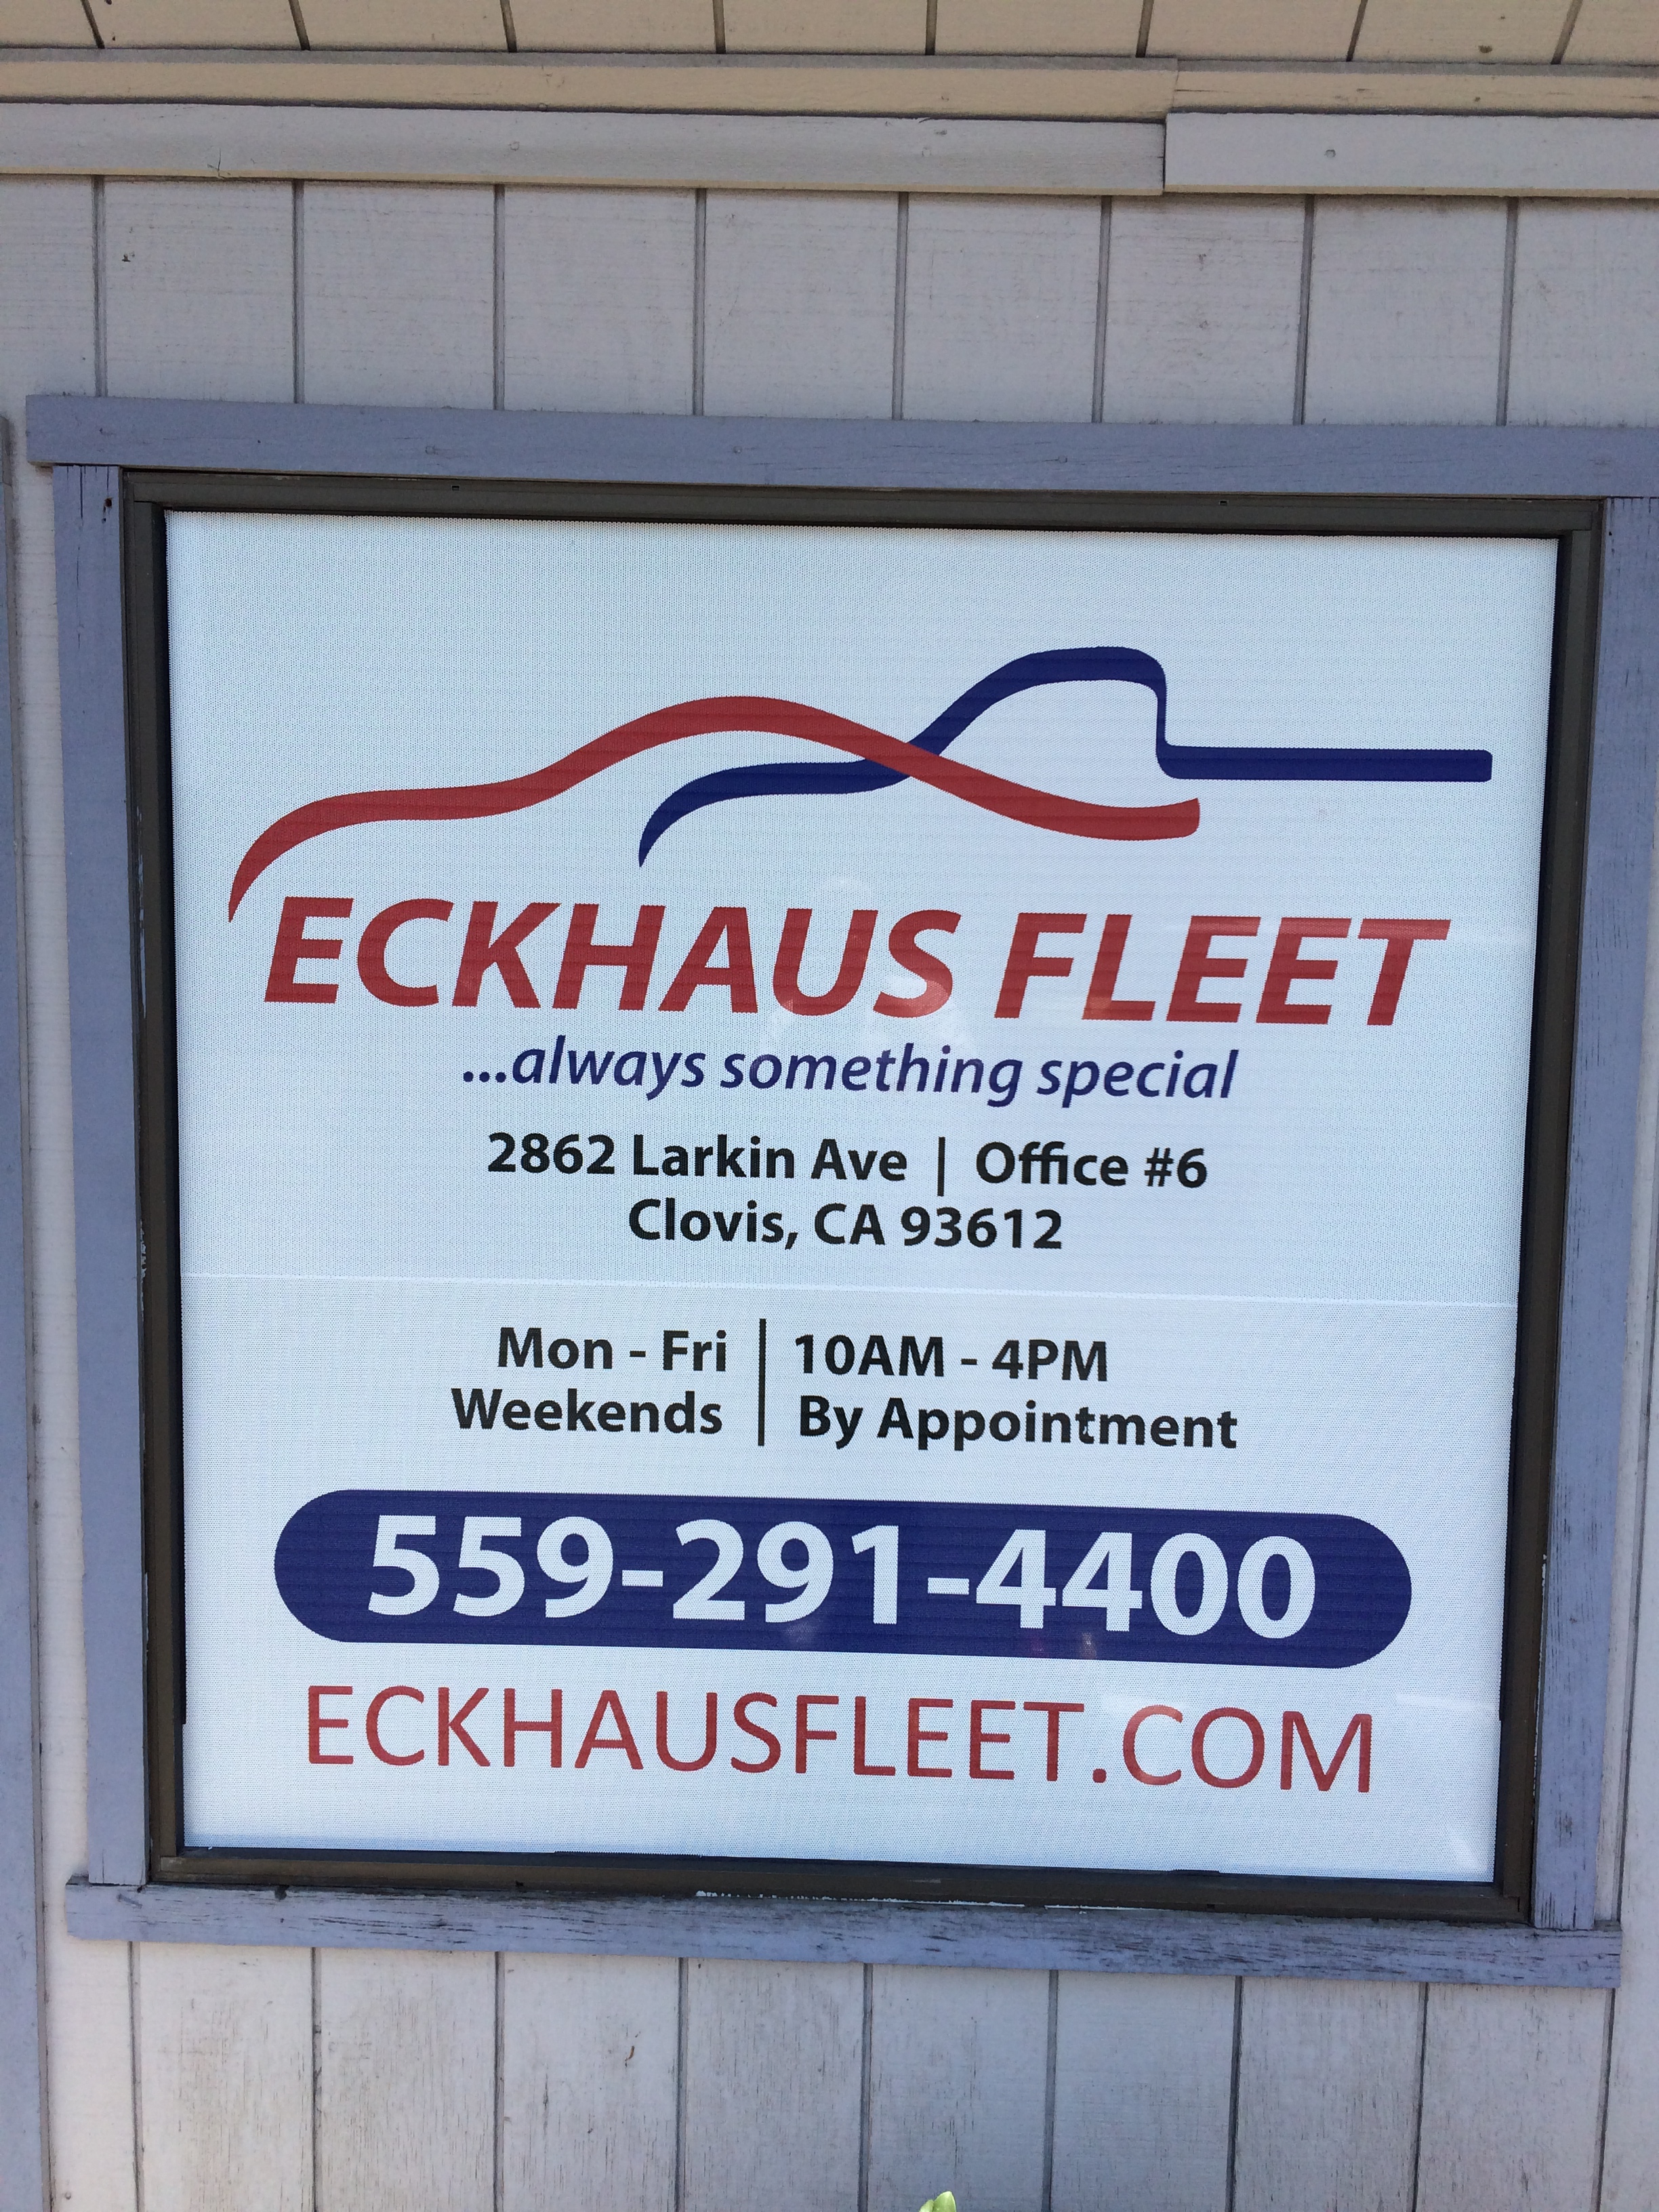 Eckhaus Fleet